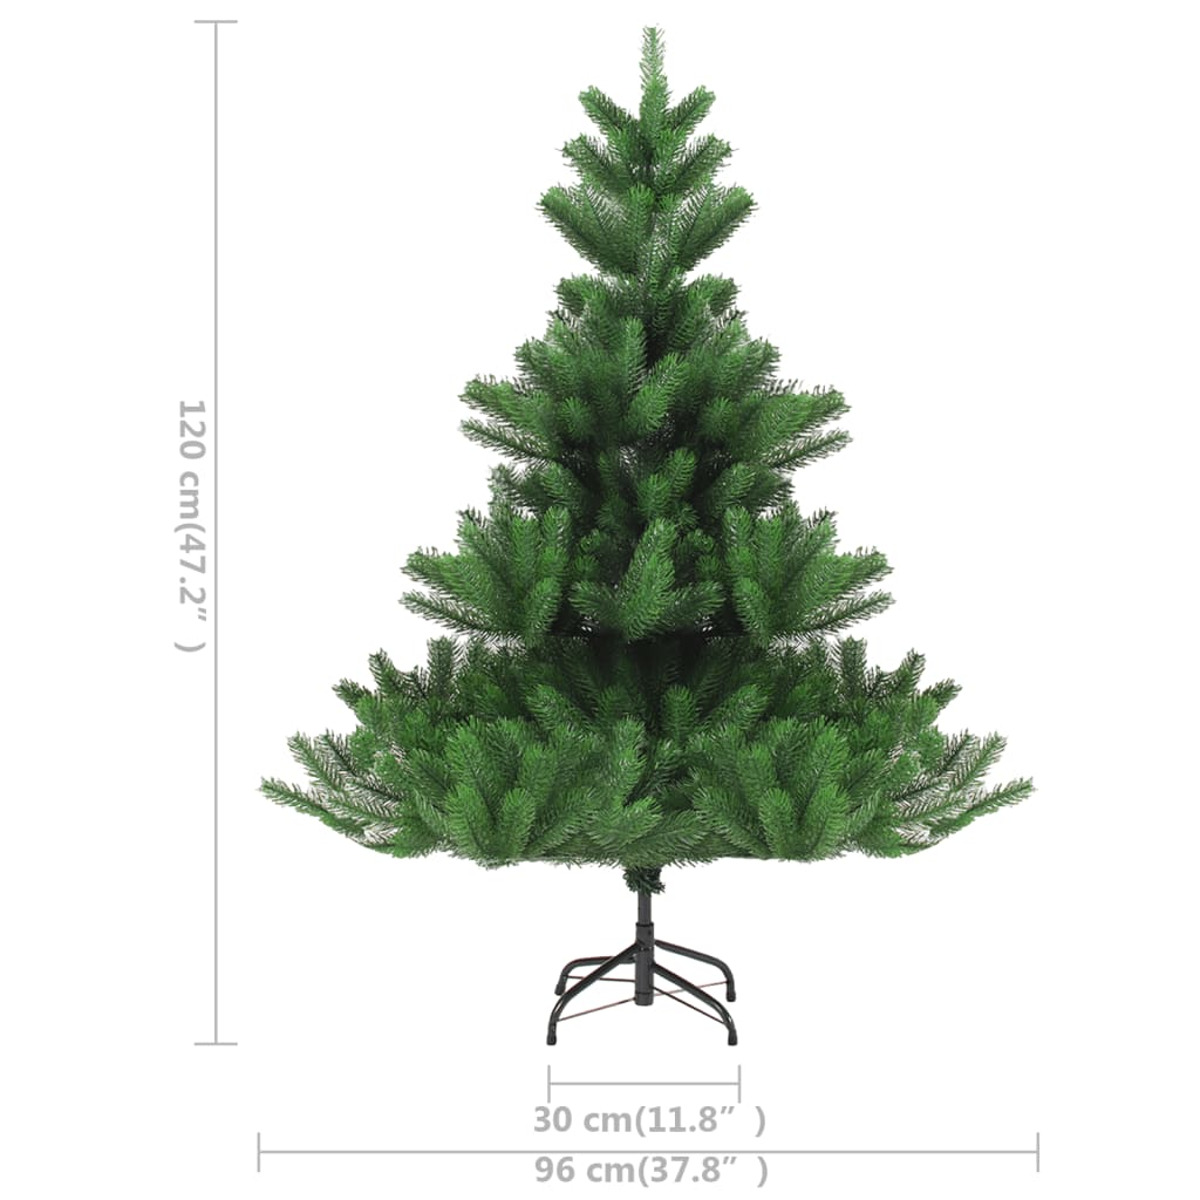 VIDAXL 3077558 Weihnachtsbaum